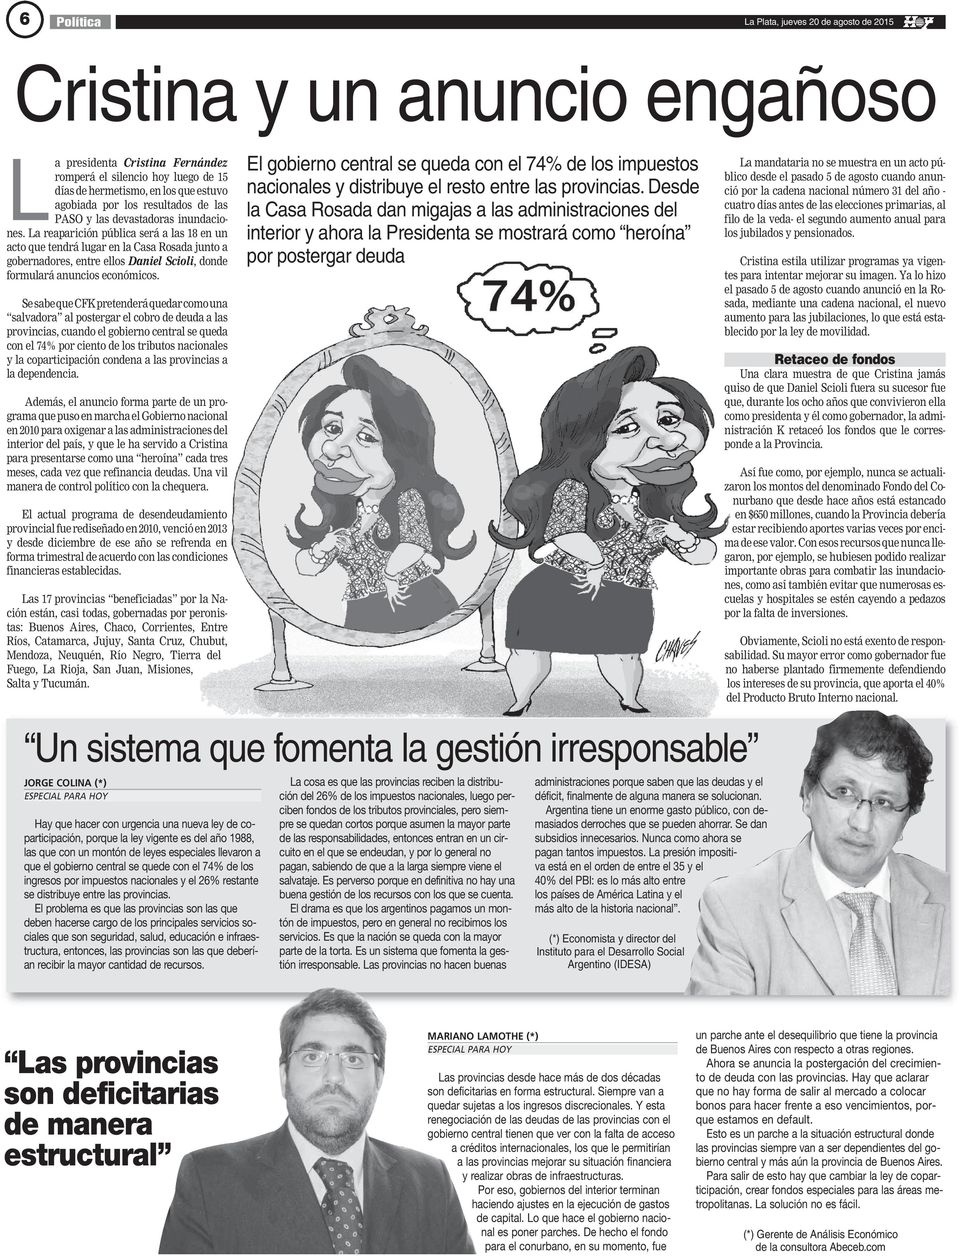 Se sabe que CFK pretenderá quedar como una salvadora al postergar el cobro de deuda a las provincias, cuando el gobierno central se queda con el 74% por ciento de los tributos nacionales y la